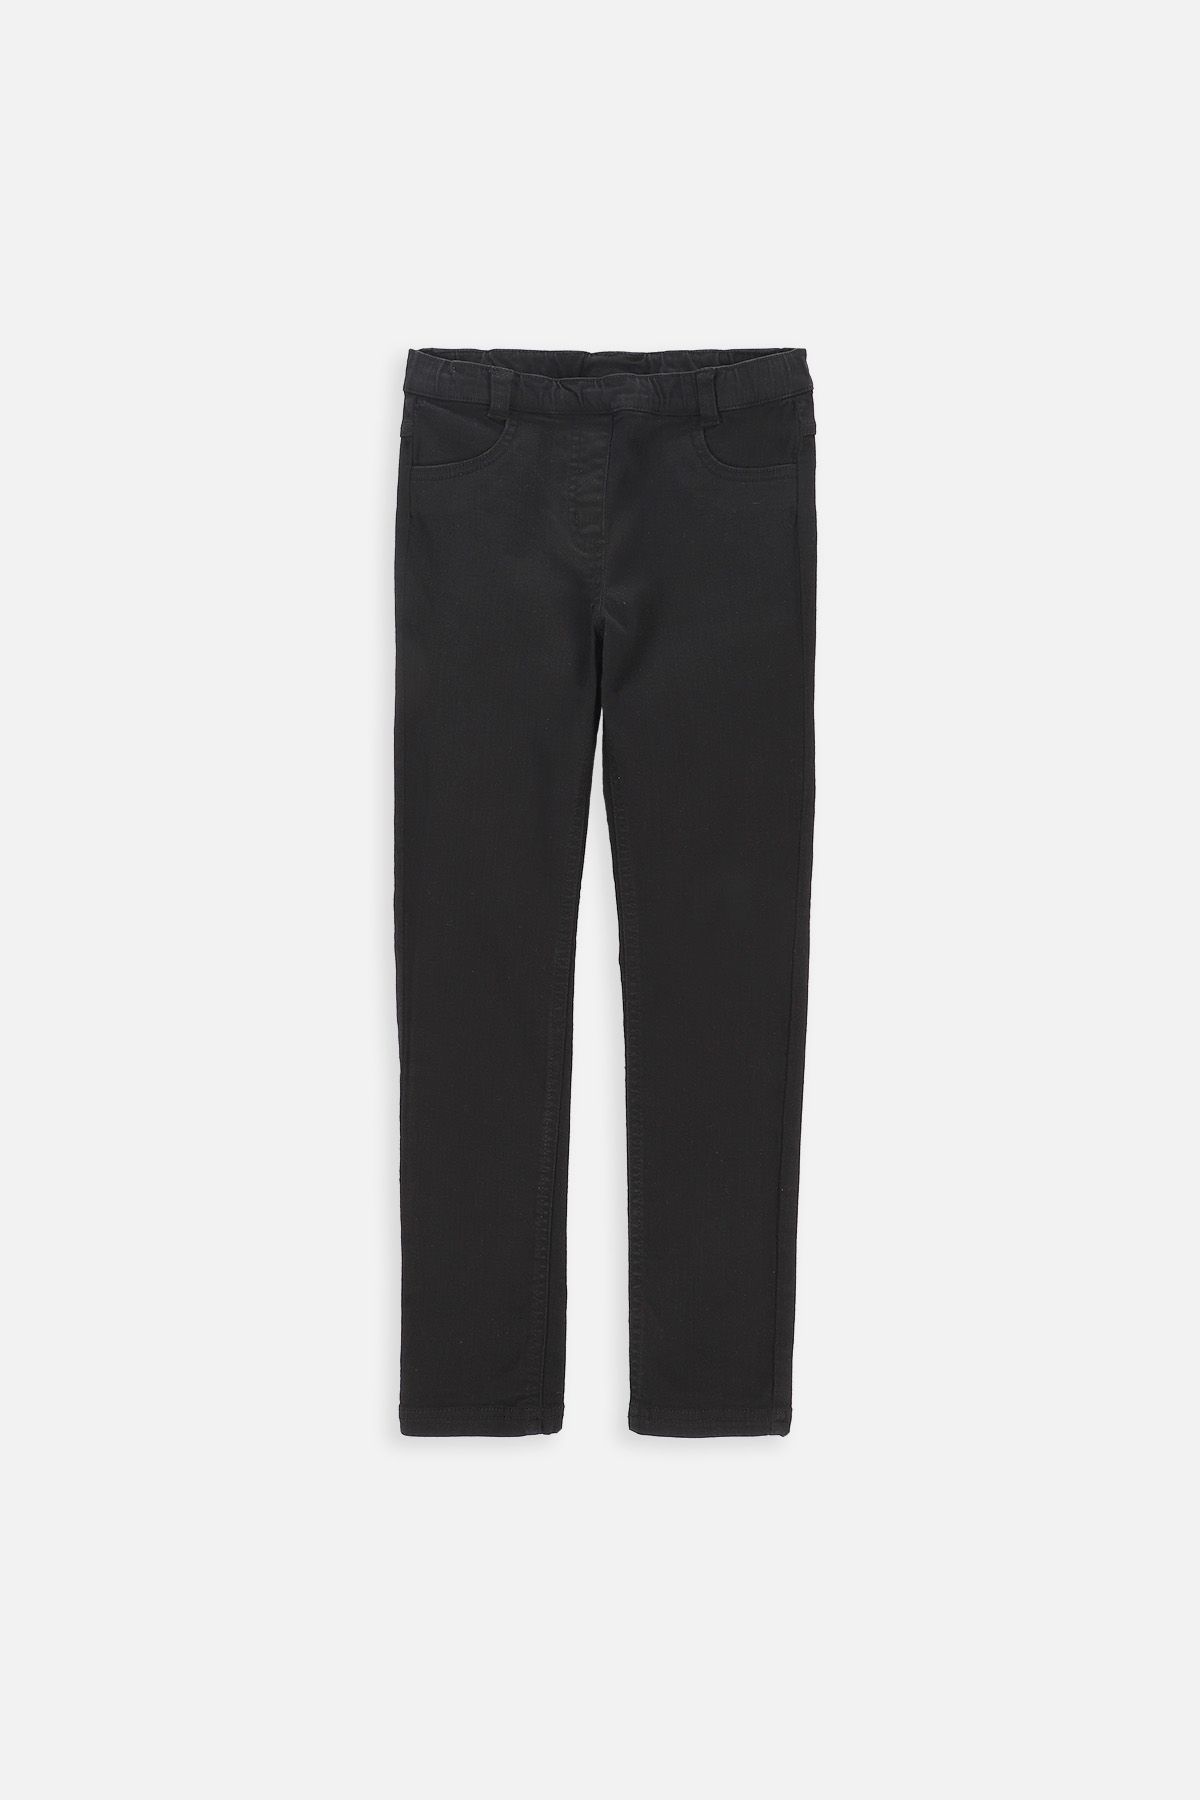 Spodnie jeansowe czarne ze zwężaną nogawką 2220109